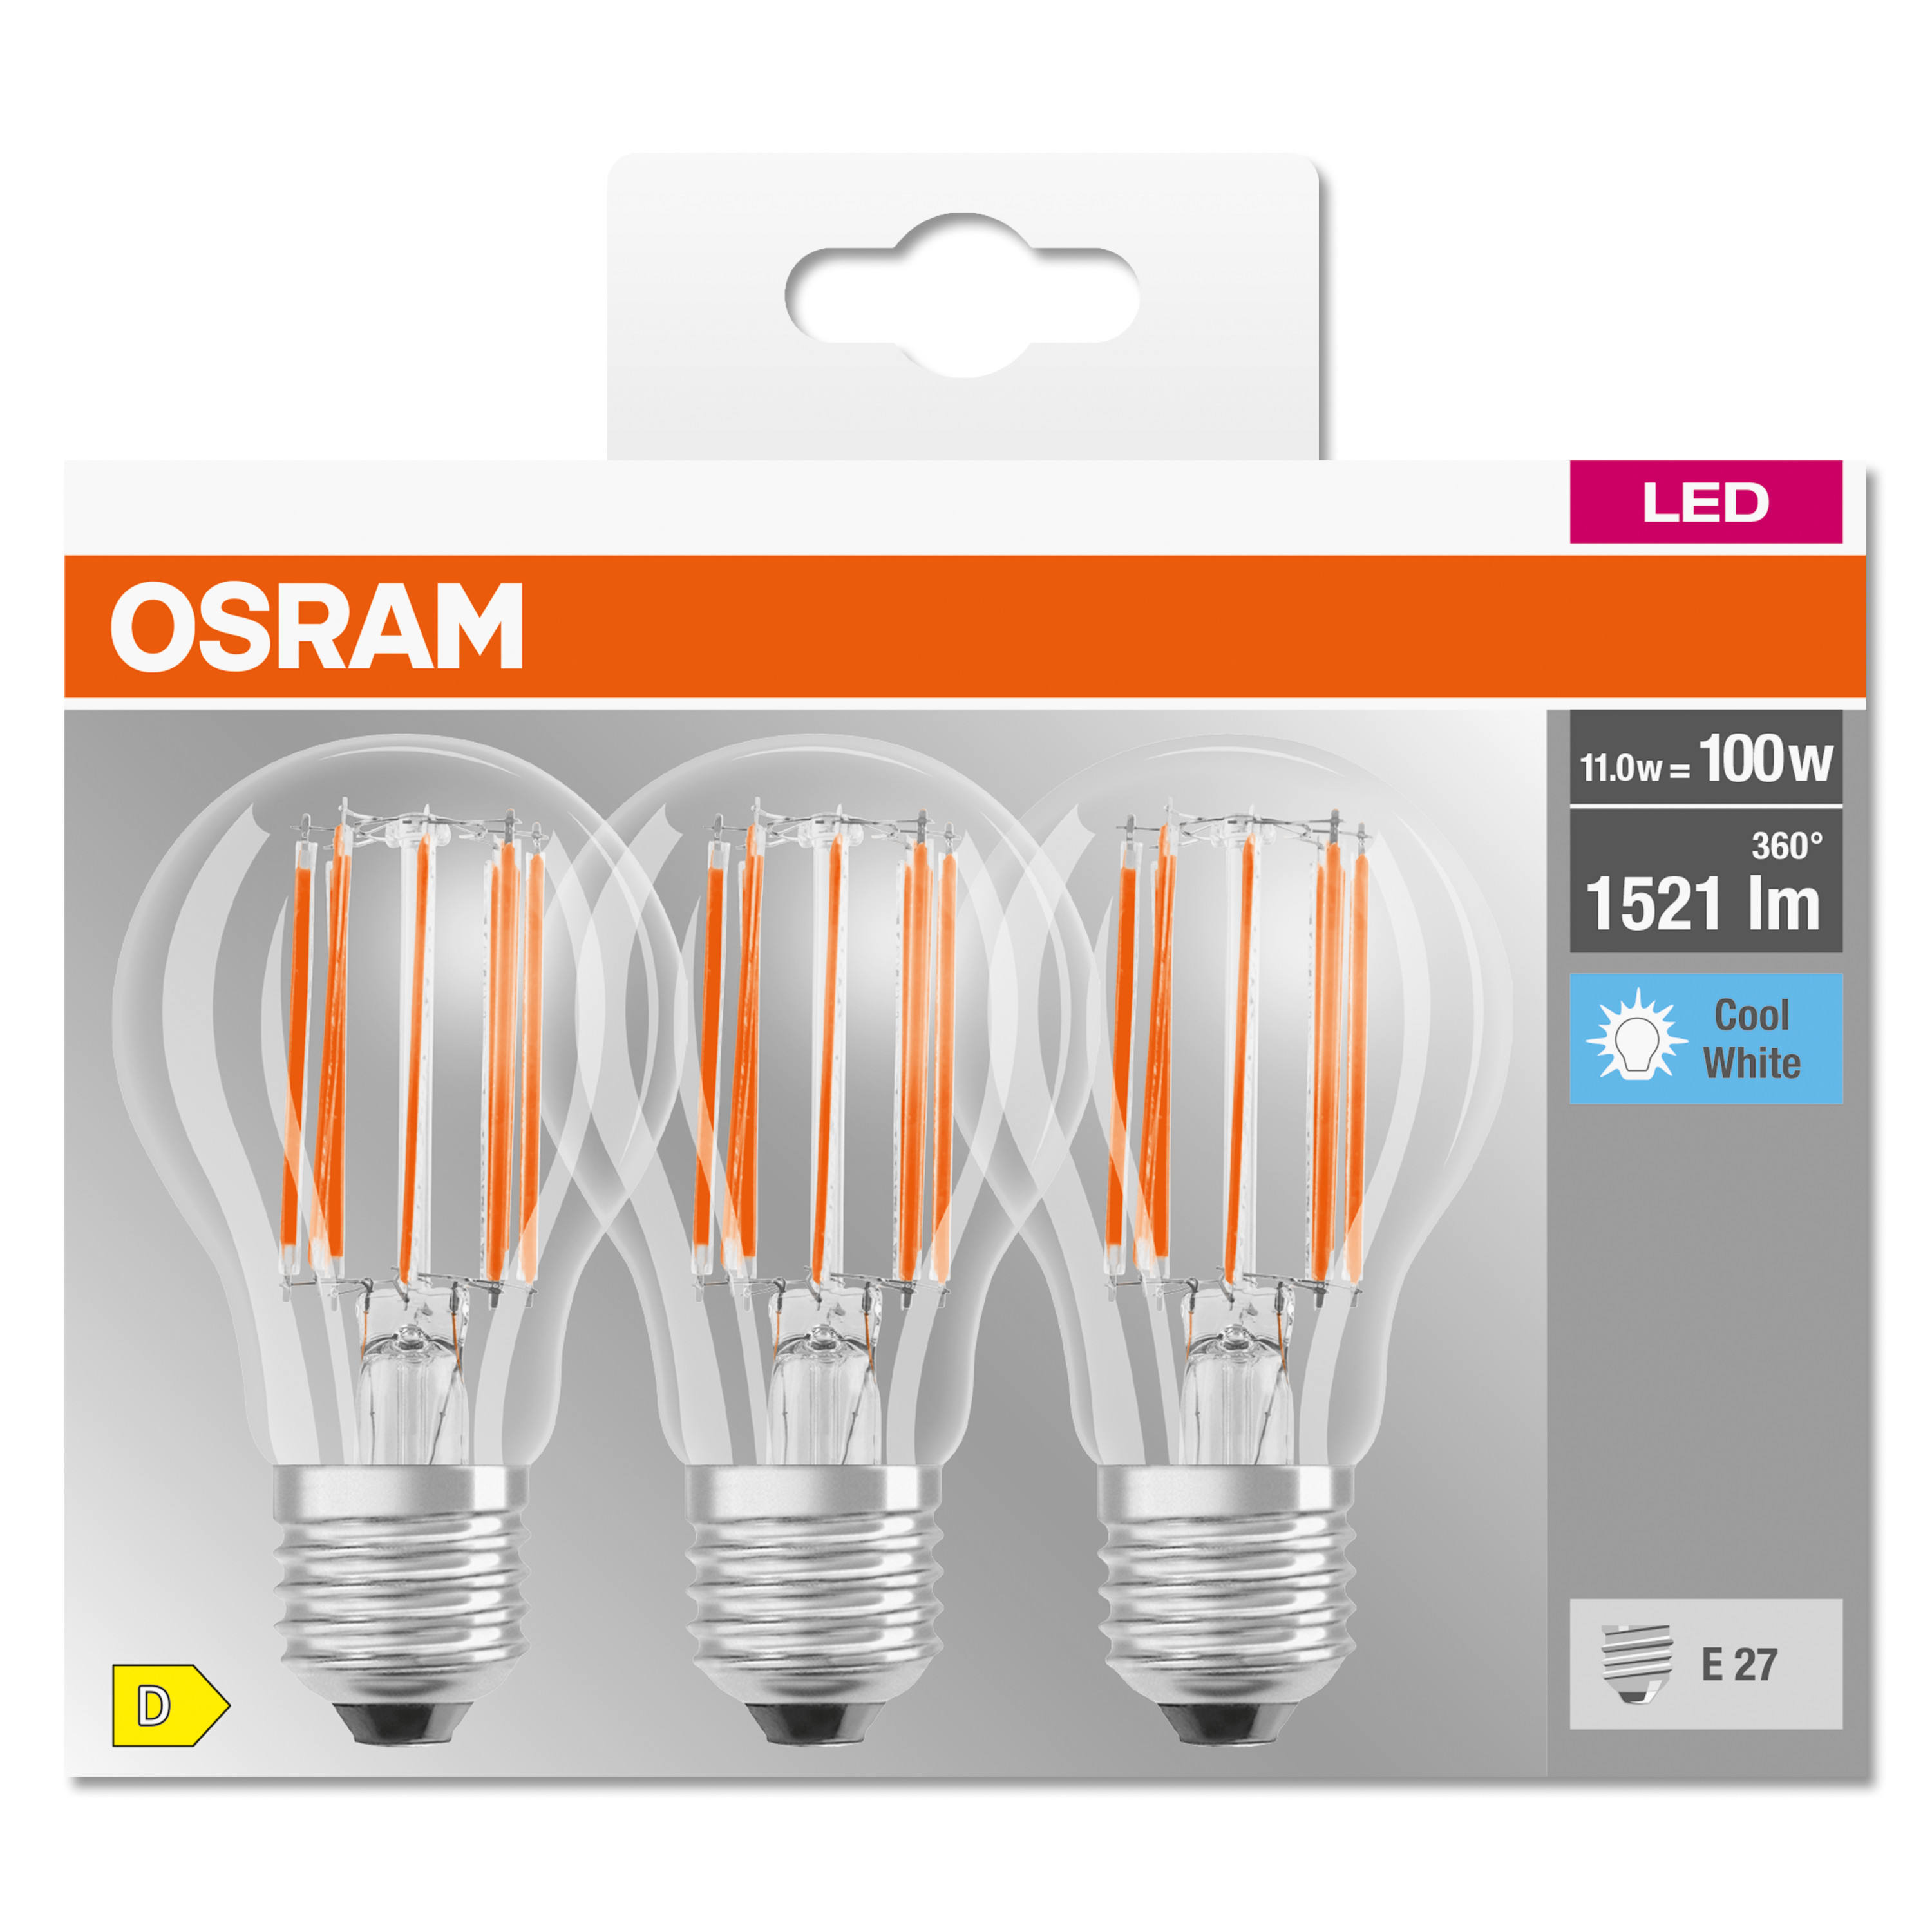 OSRAM  LED BASE CLASSIC Lampe Kaltweiß LED 1521 lumen A